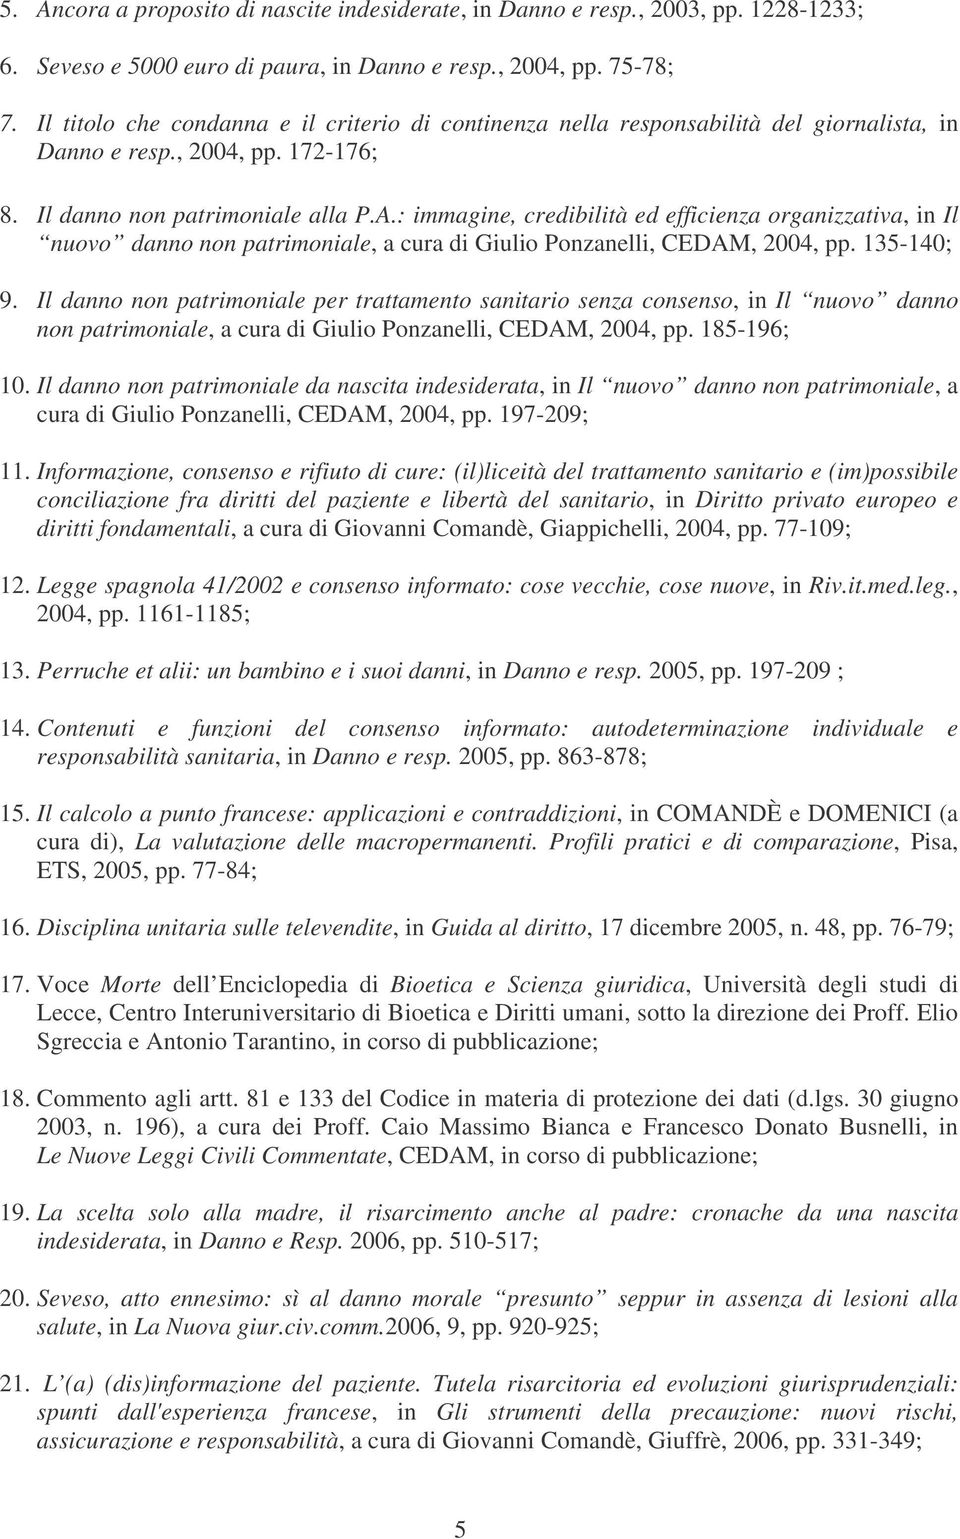 : immagine, credibilità ed efficienza organizzativa, in Il nuovo danno non patrimoniale, a cura di Giulio Ponzanelli, CEDAM, 2004, pp. 135-140; 9.